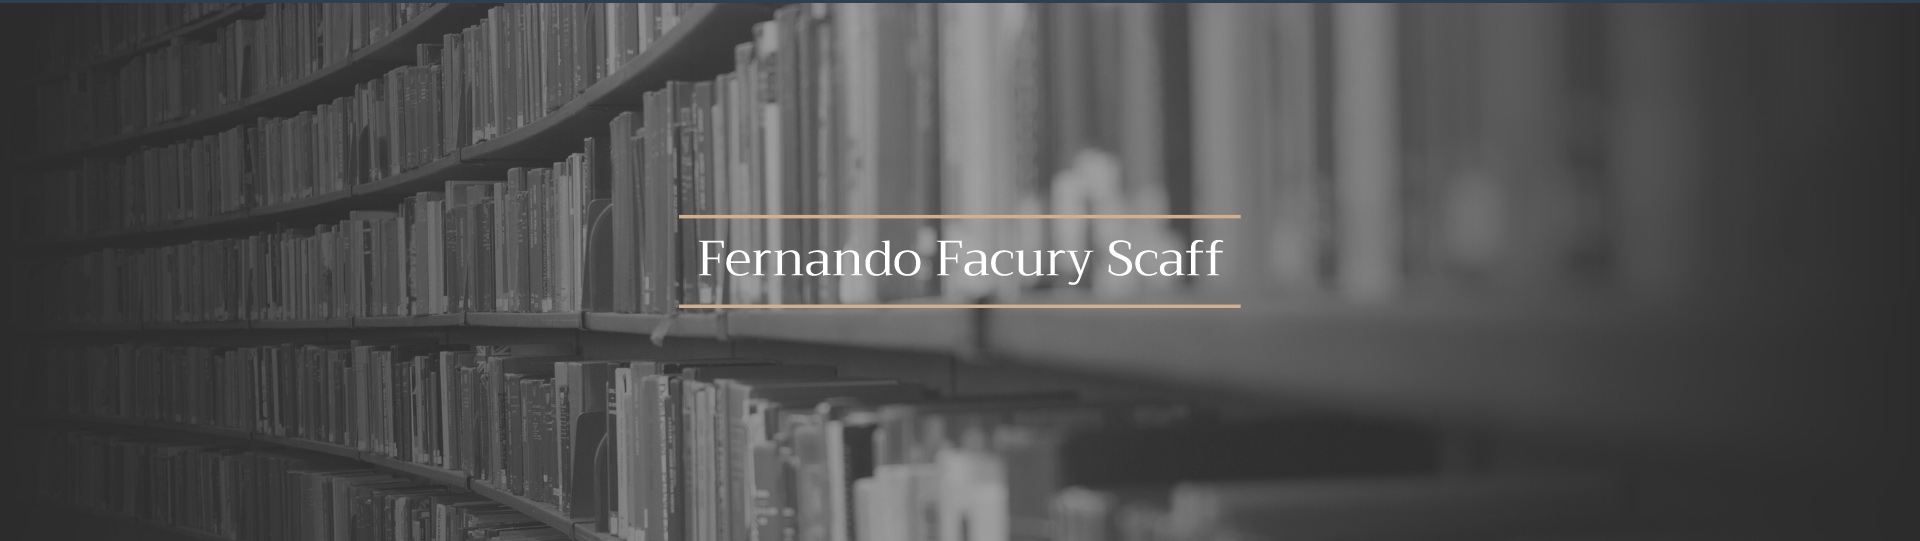 Site Fernando Facury Scaff desenvolvido pela Unitri Design